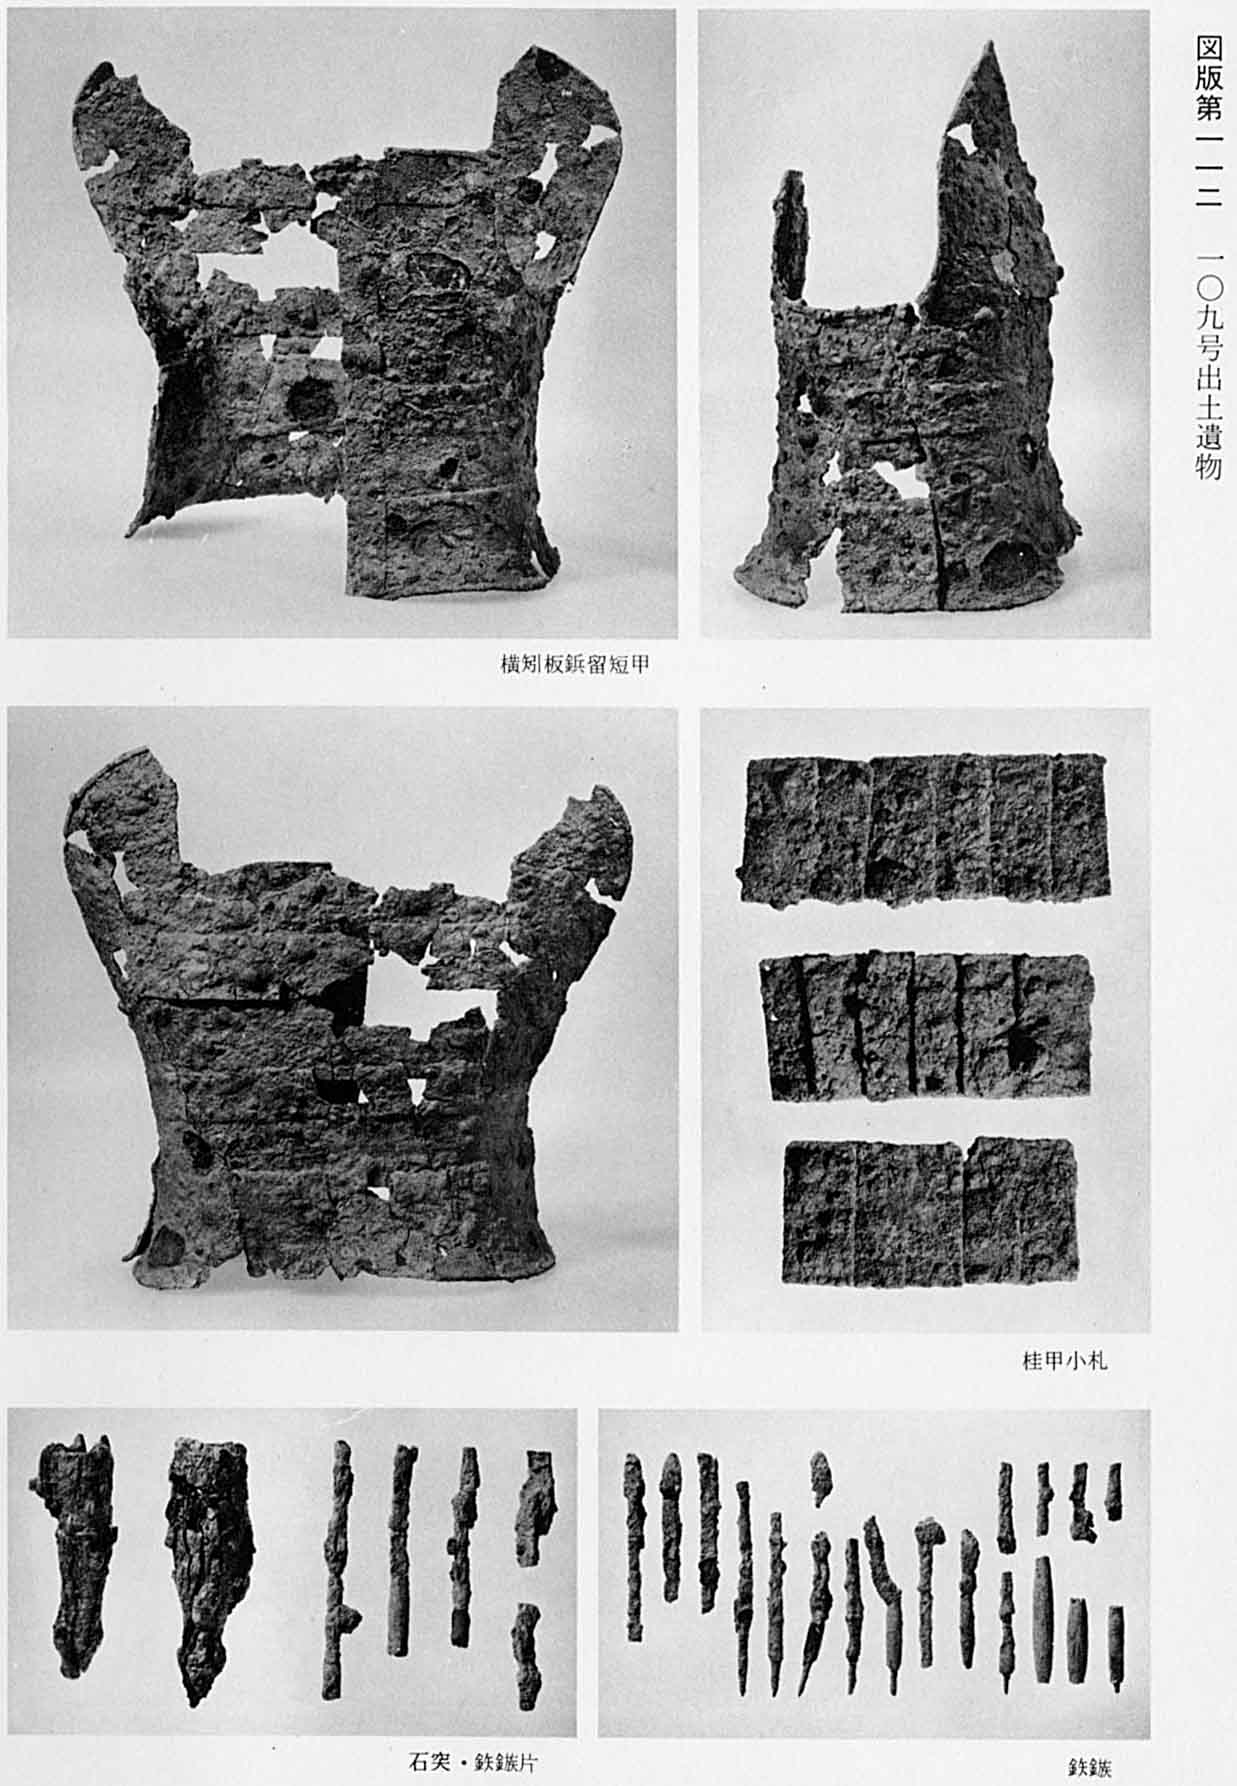 古代の甲羅を正面、横、後ろから撮影した写真と、甲羅に着けた小札と、5本の古代の尖った石と、鉄製の矢じりが14本分並んでいる、図版112 109号遺物出土遺物のモノクロ写真